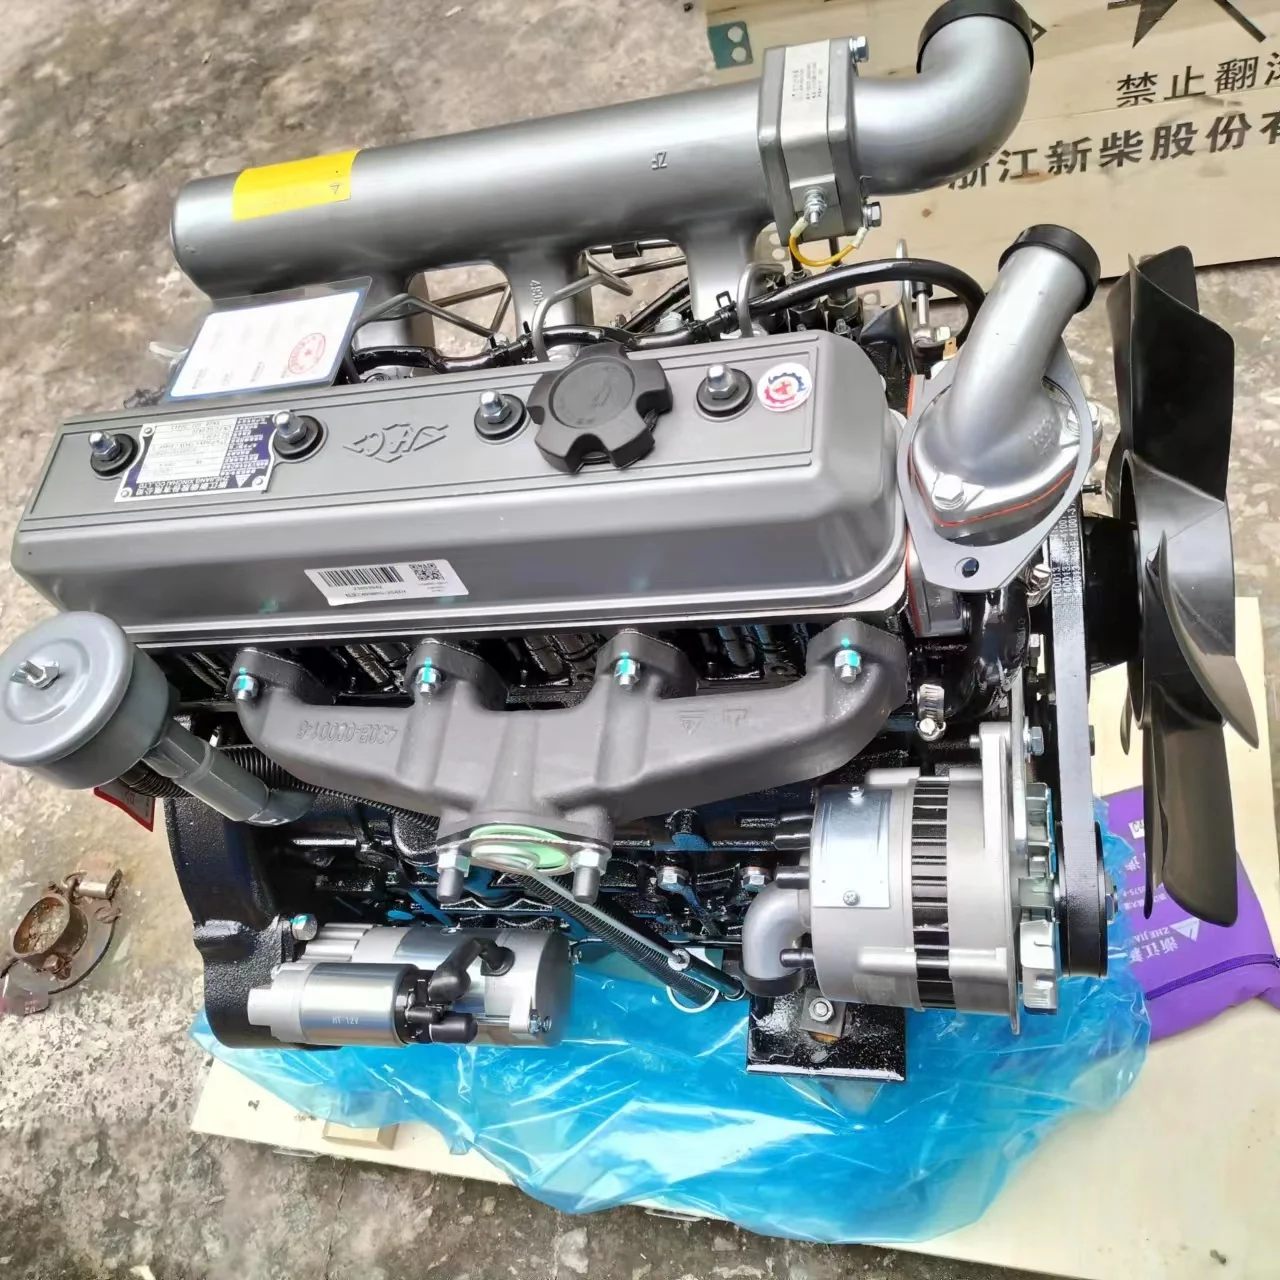 Заводские продажи, двигатель Xinchai 490BPG / C490BPG / A490BPG в сборе на складе.